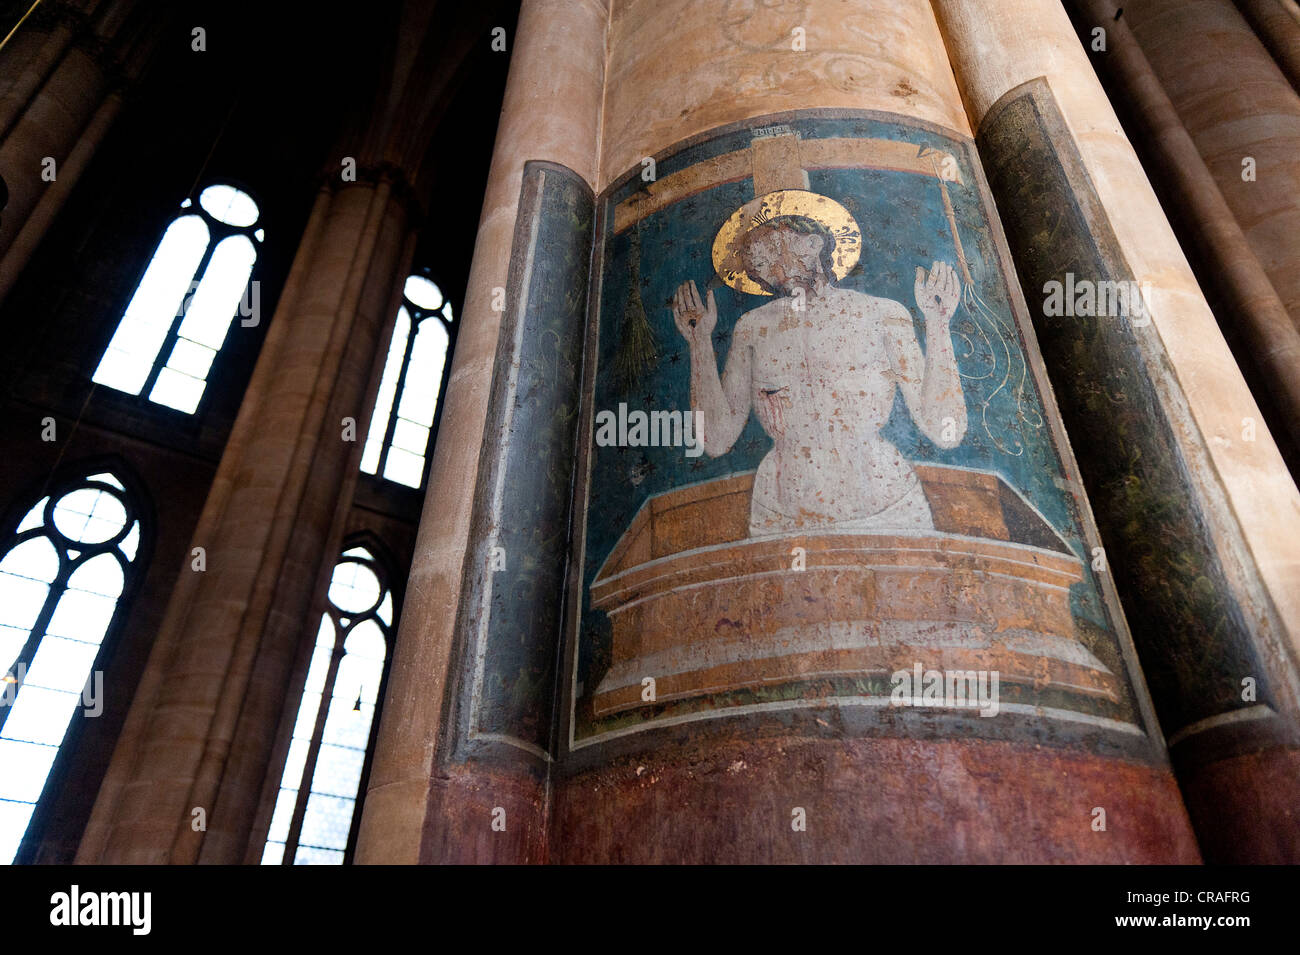 Représentation de Christ, plein air sur une colonne, l'Église Sainte-elisabeth, Marburg, Hesse, Germany, Europe Banque D'Images